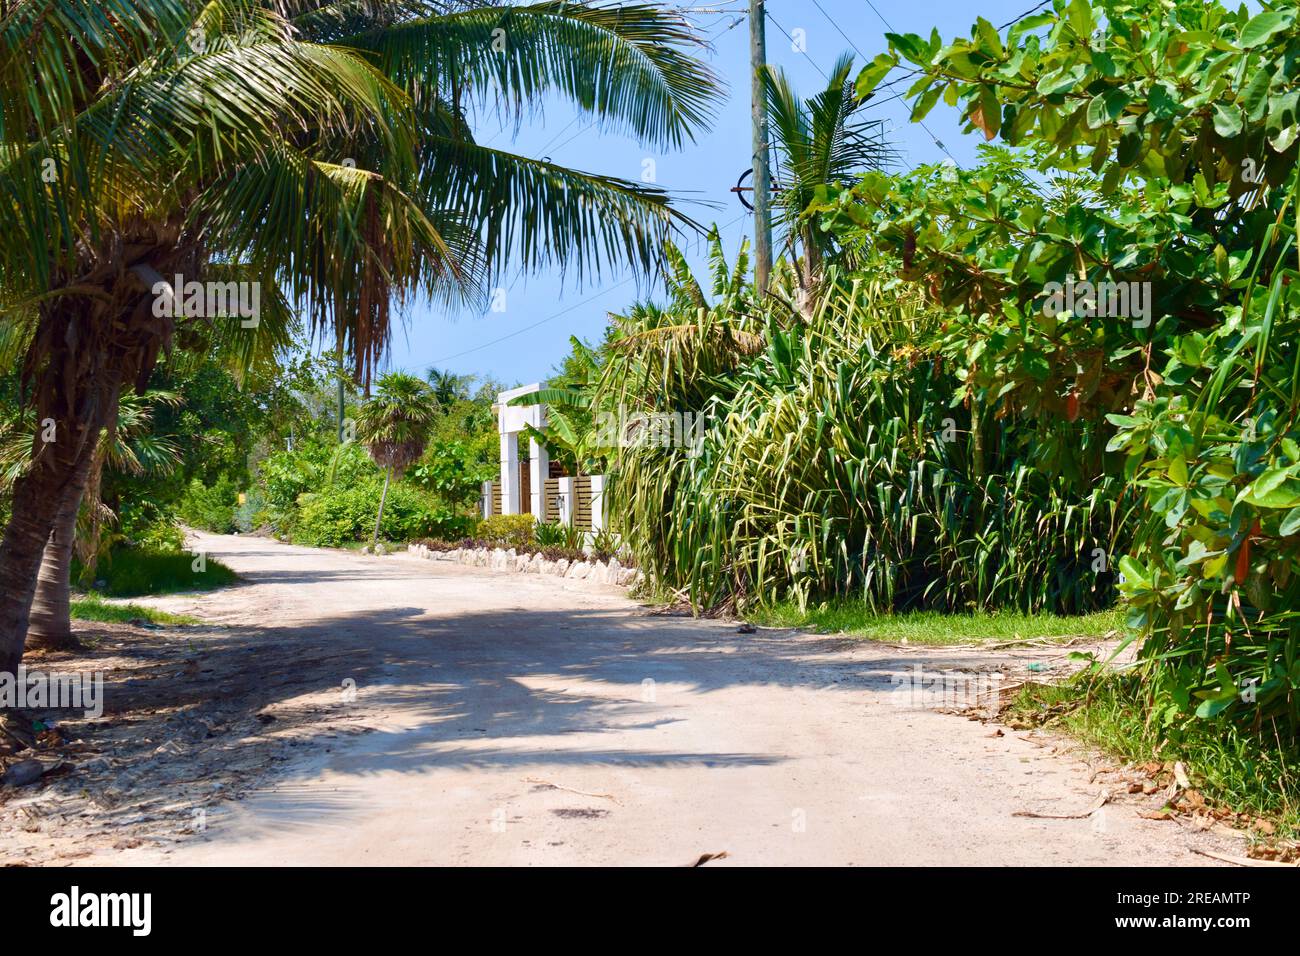 La route accidentée allant à l'extrémité nord d'Ambergris Caye, Belize. Caraïbes/Amérique centrale. Banque D'Images